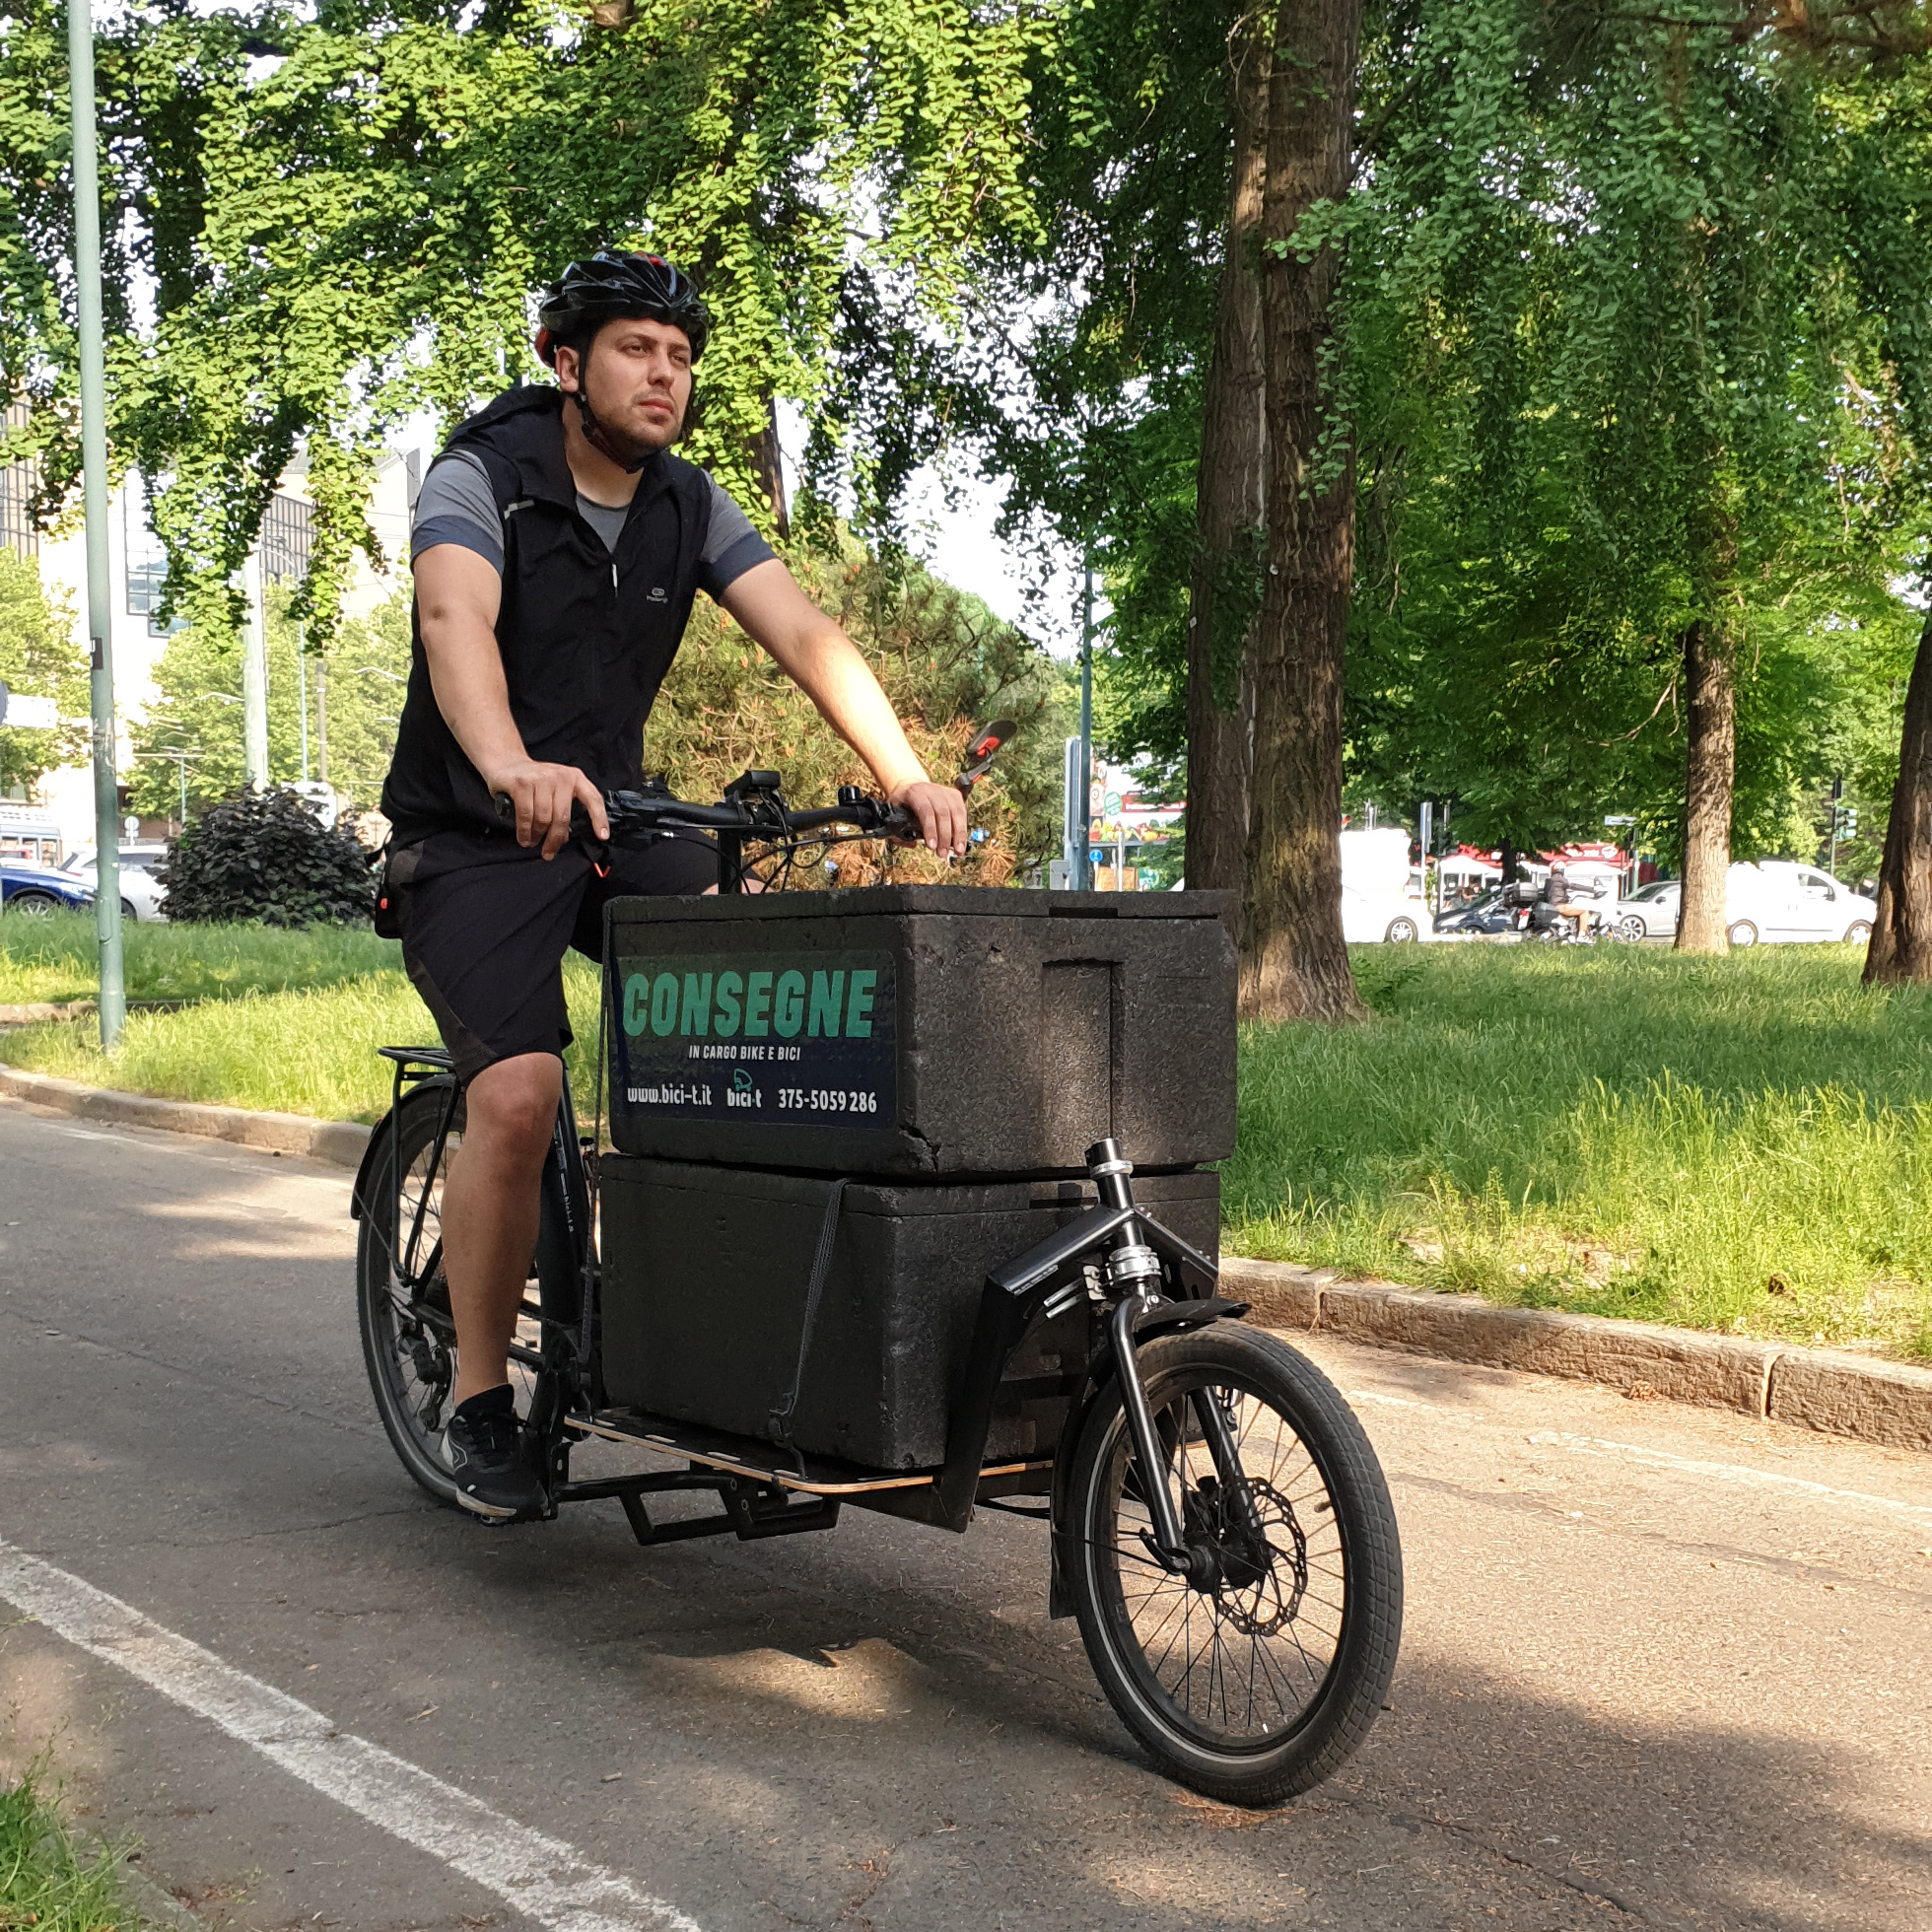 Bici-t consegna cibo in contenitori polibox per il trasporto cibo